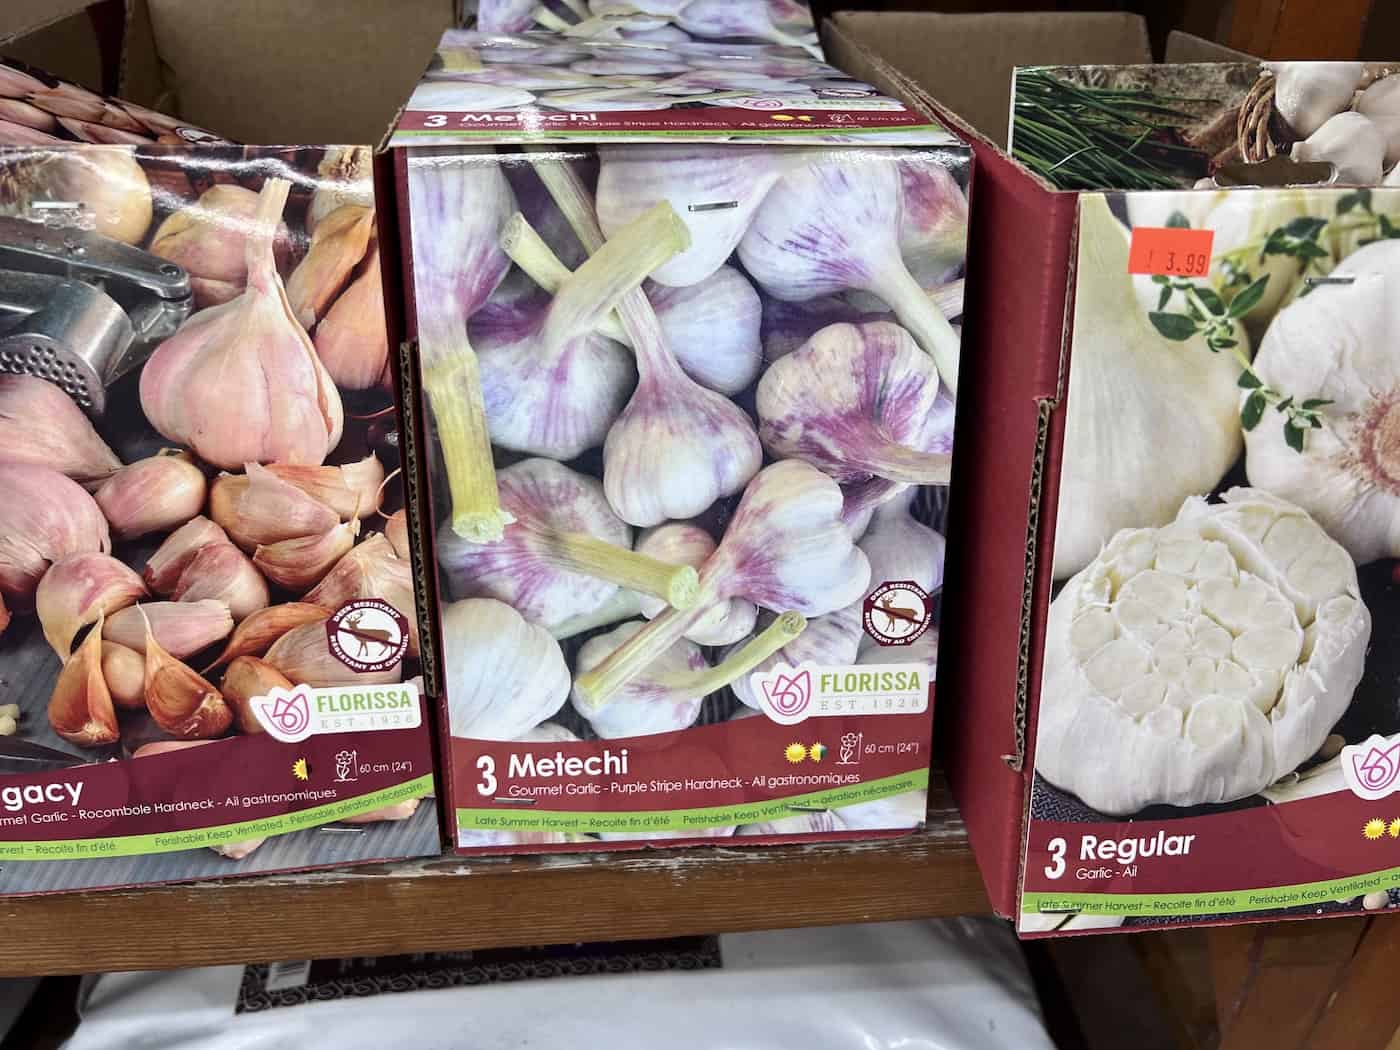 Metechi seed garlic